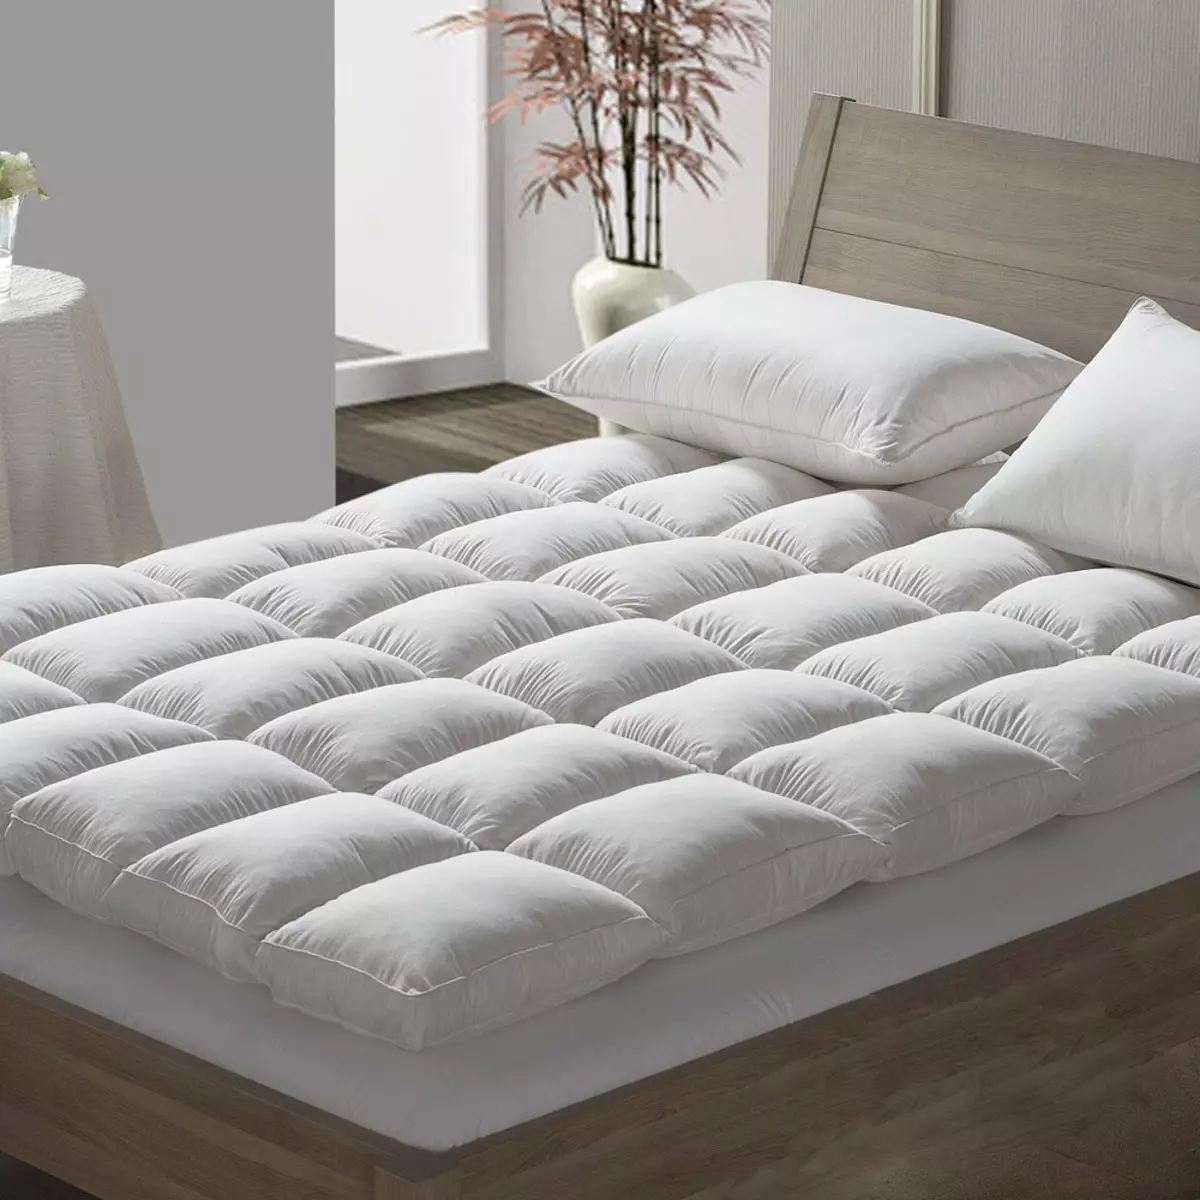 Tolstoy dyshek mbulon: 160x200, 180x200 dhe 140x200 në krevat, zgjidhni dyshek të butë në një grup gome 21571_12